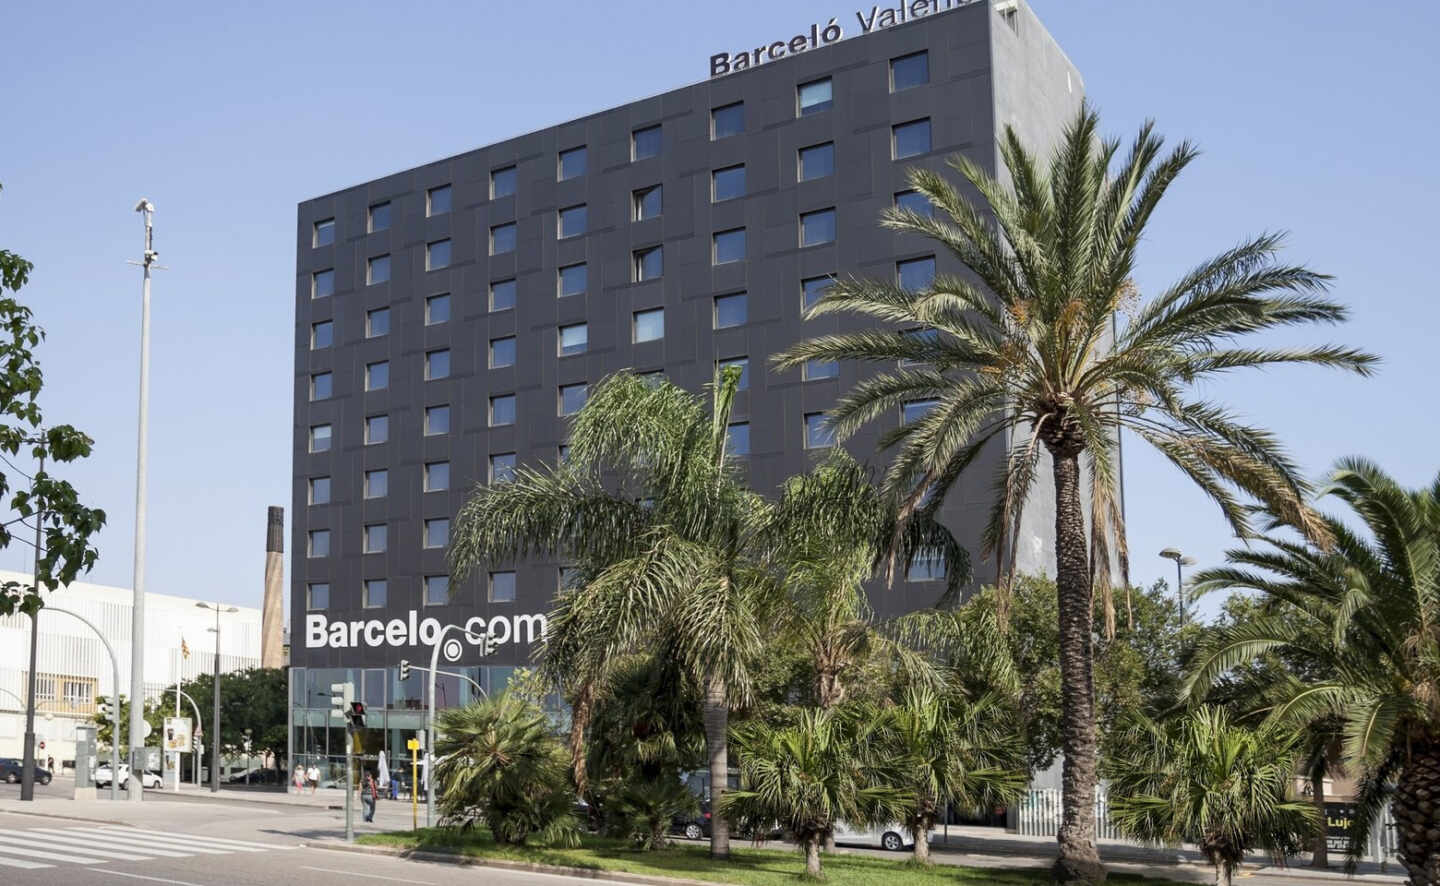 El hotel Barceló Valencias, que reabre esta semana tras meses de parón por la pandemia de Covid-19.